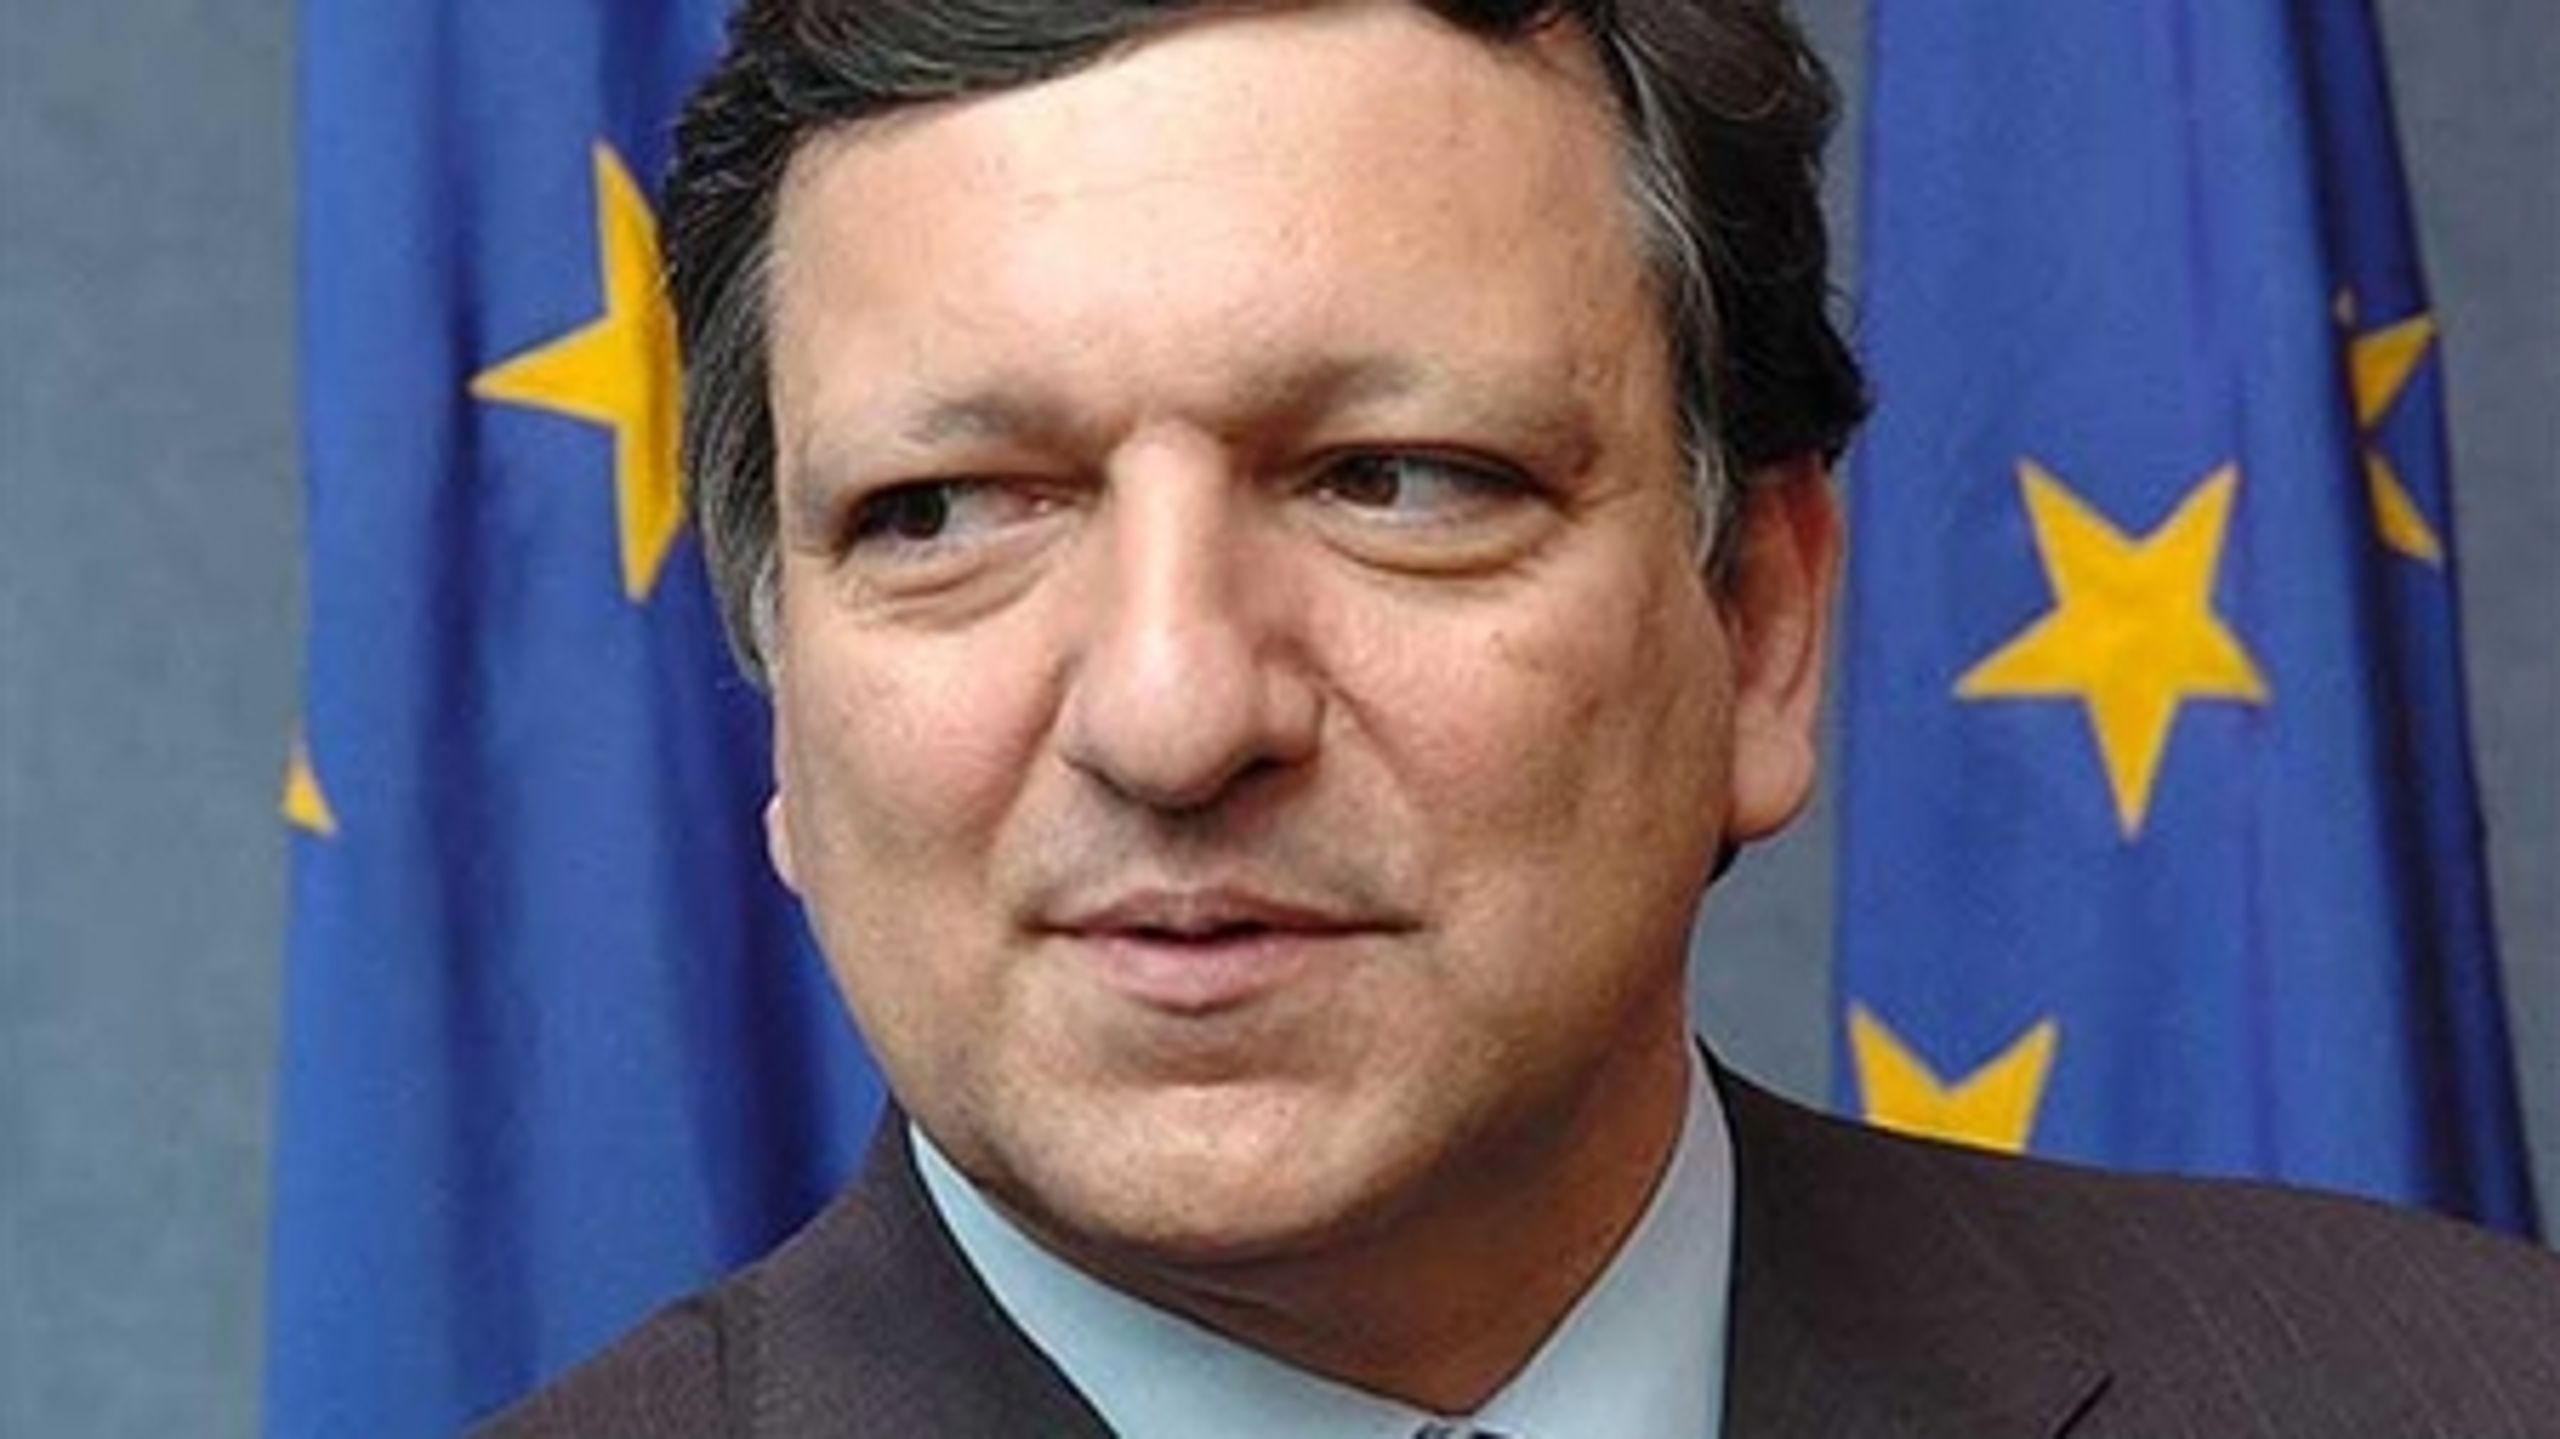 "Kommissionen må dog opretholde en balance mellem åbenhed og effektivitet (...), ikke i egen eller medlemsstaternes interesse, men i offentlighedens interesse," skriver Barroso, som argument for at fastholde mørklægningen af traktatsager. 